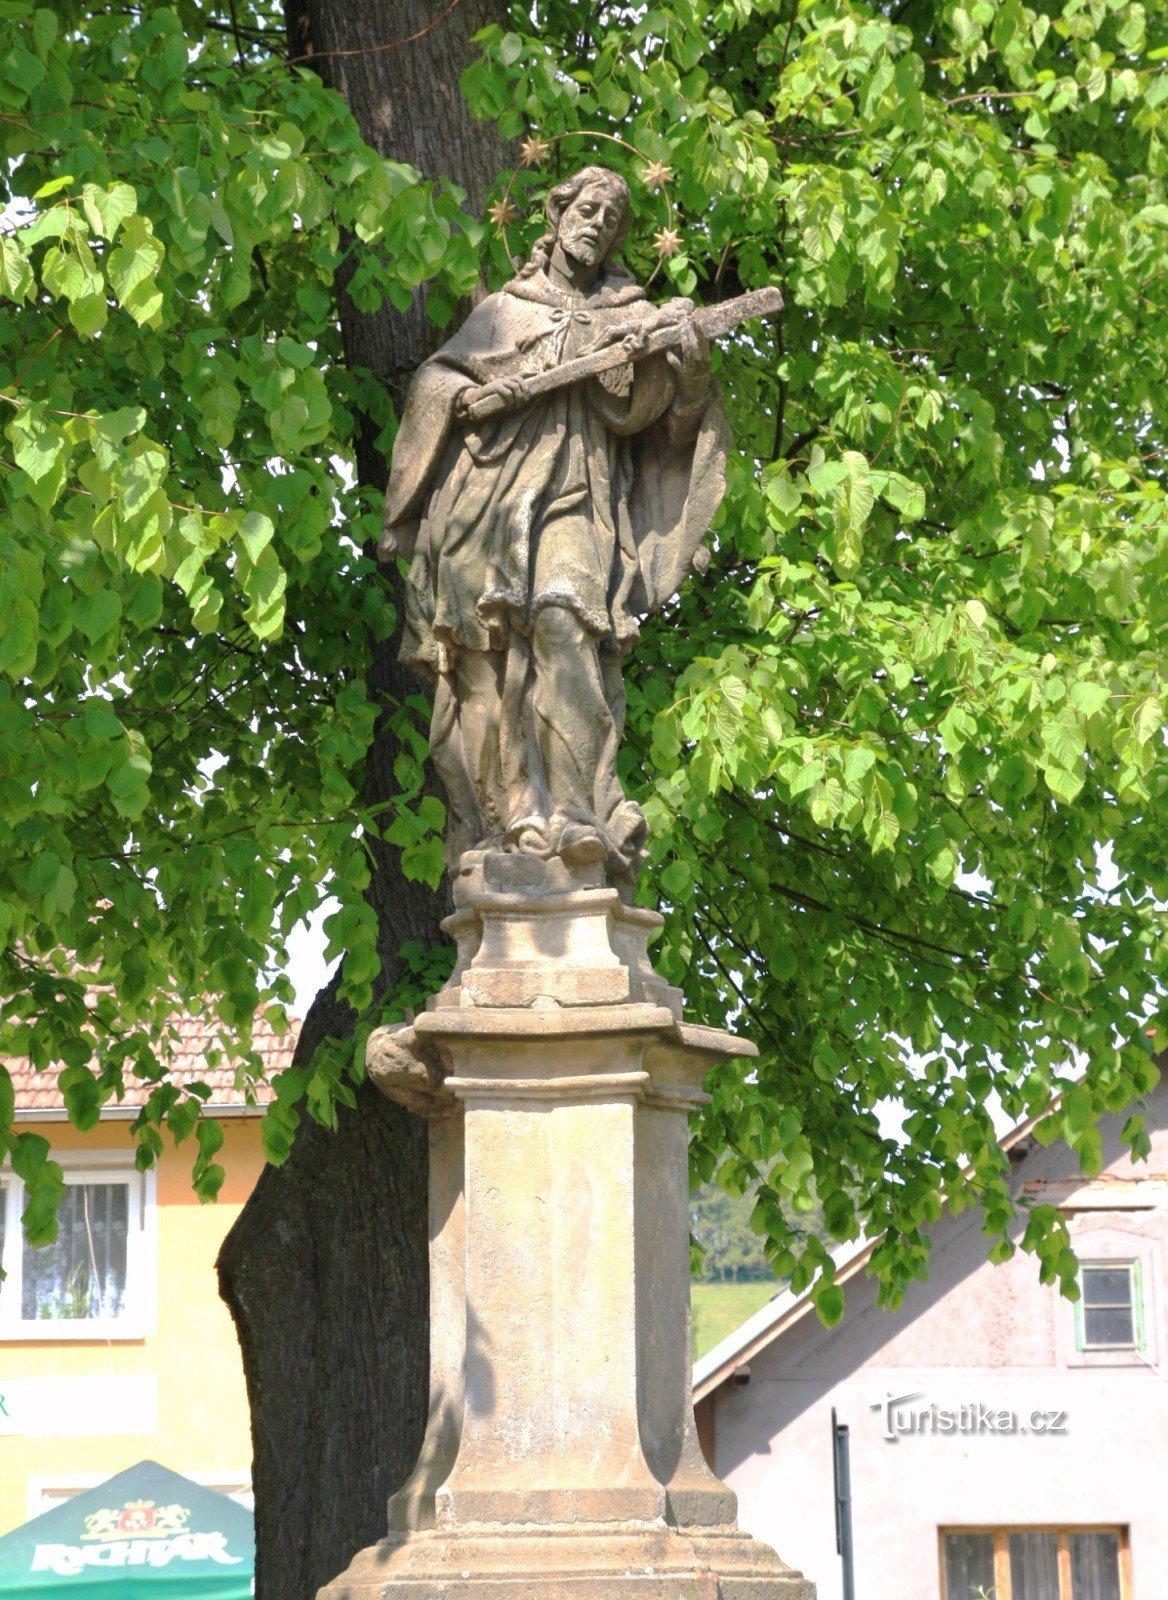 Vojnův Městec - statue af St. Jan Nepomucký på pladsen